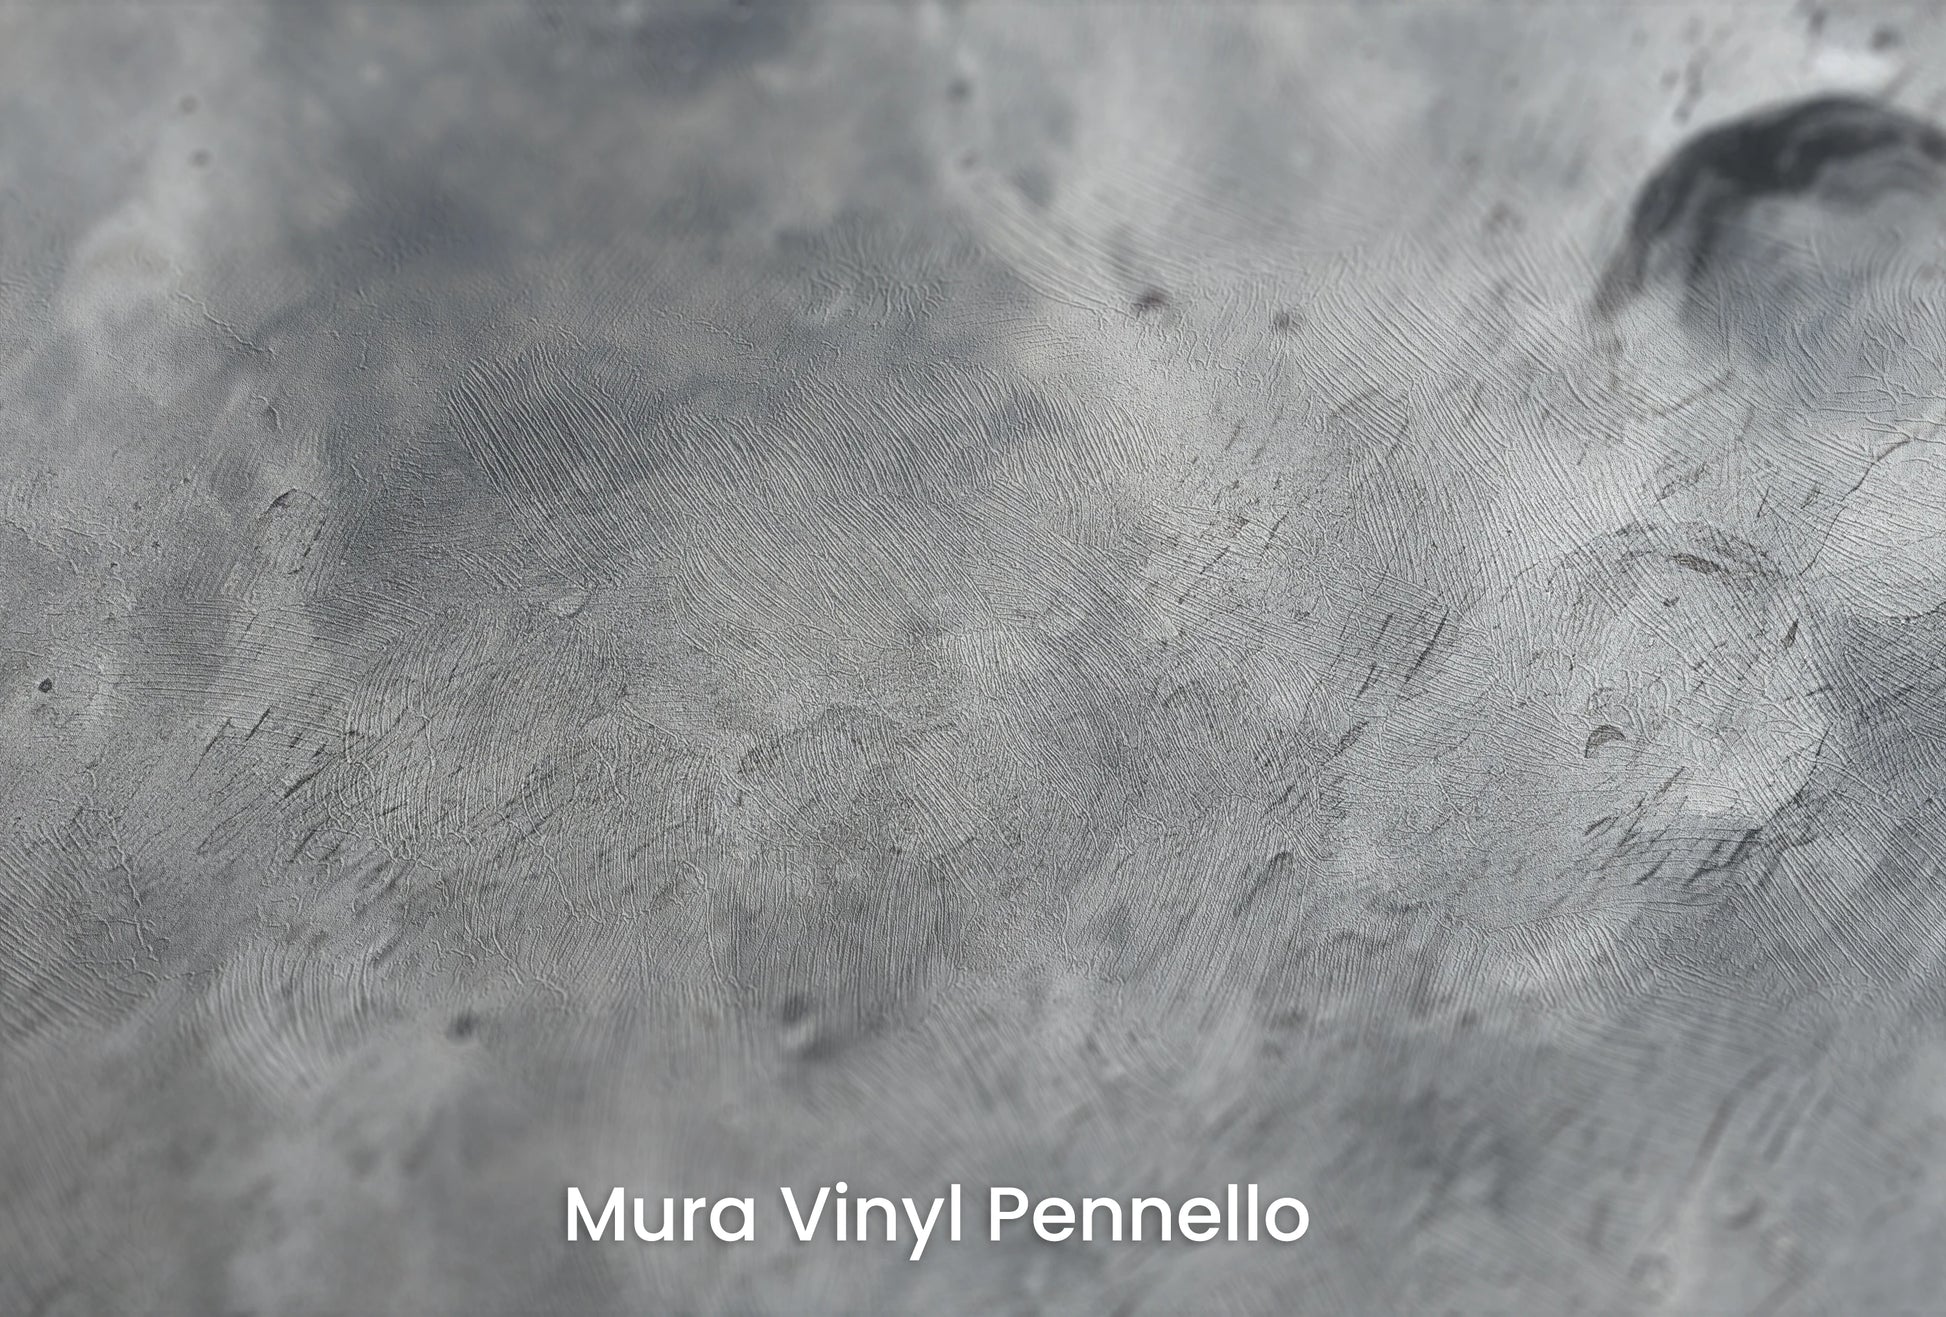 Zbliżenie na artystyczną fototapetę o nazwie Martian Elegance na podłożu Mura Vinyl Pennello - faktura pociągnięć pędzla malarskiego.